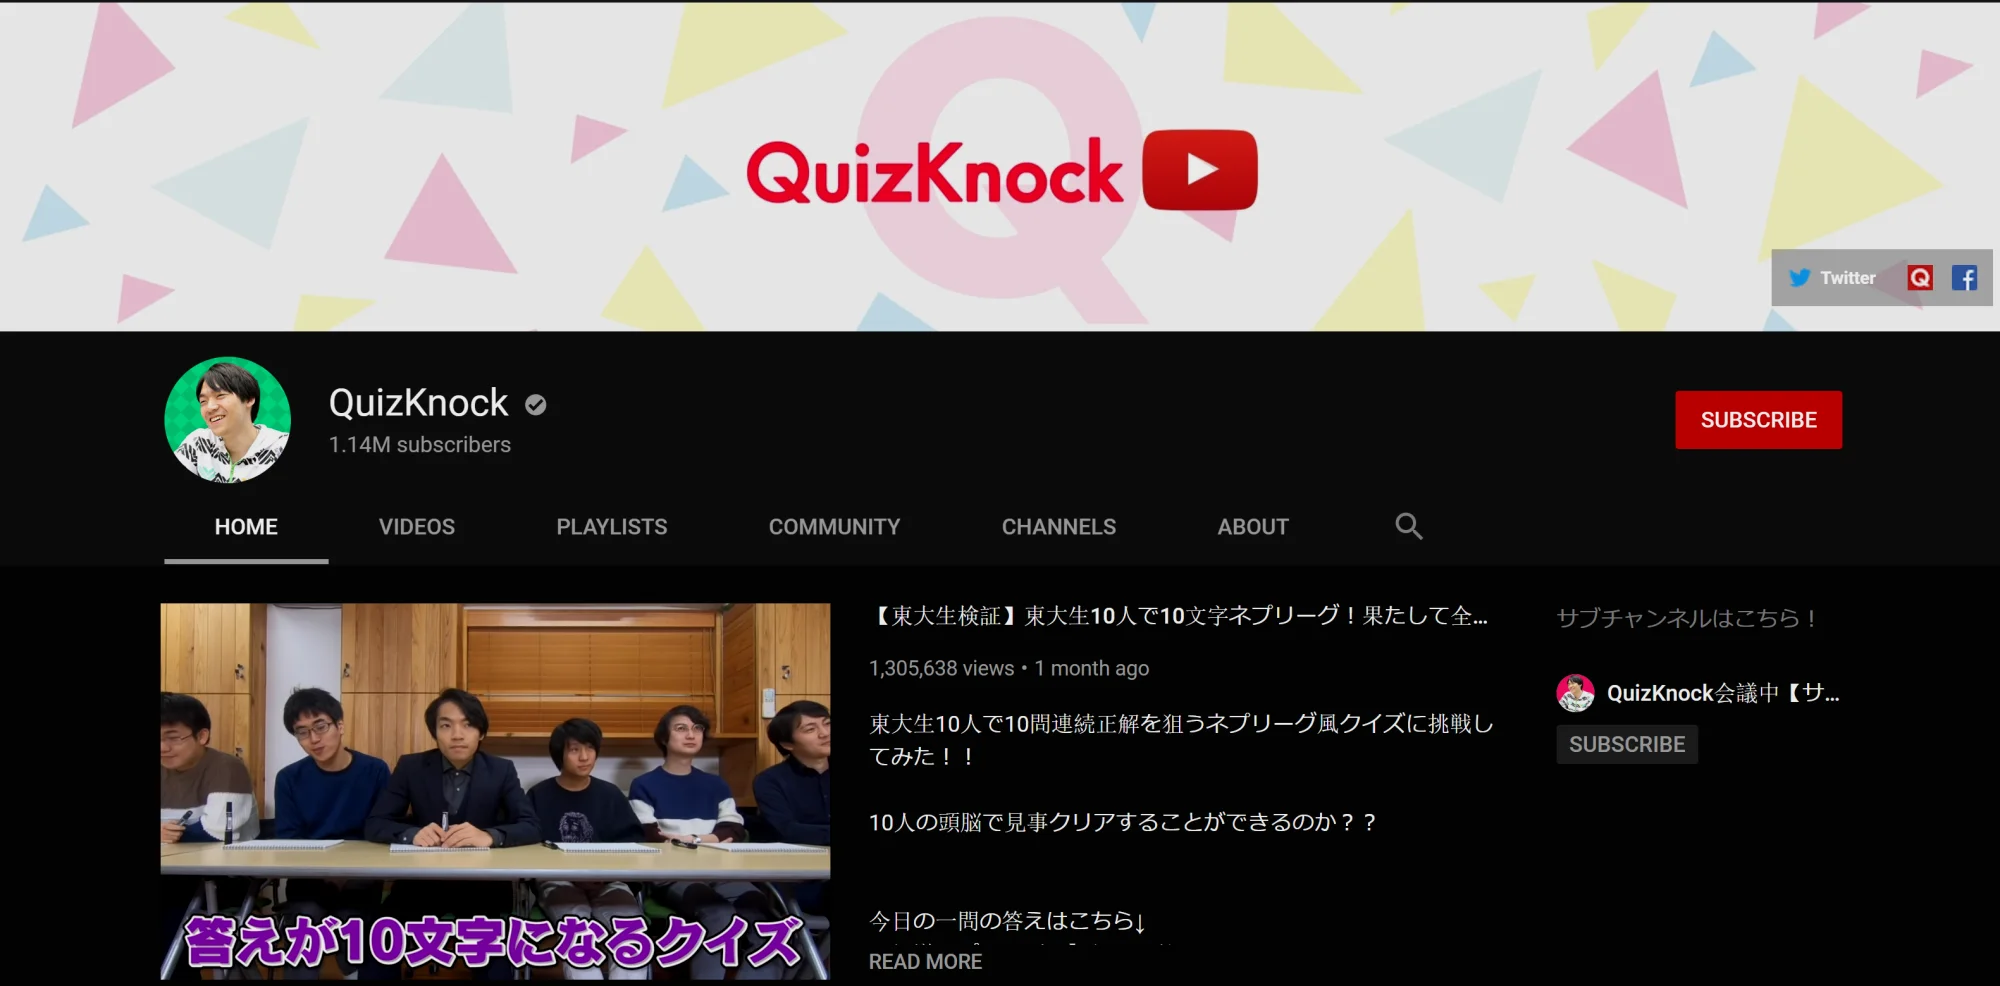 伊泽拓司的YouTube频道“QuizKnock”